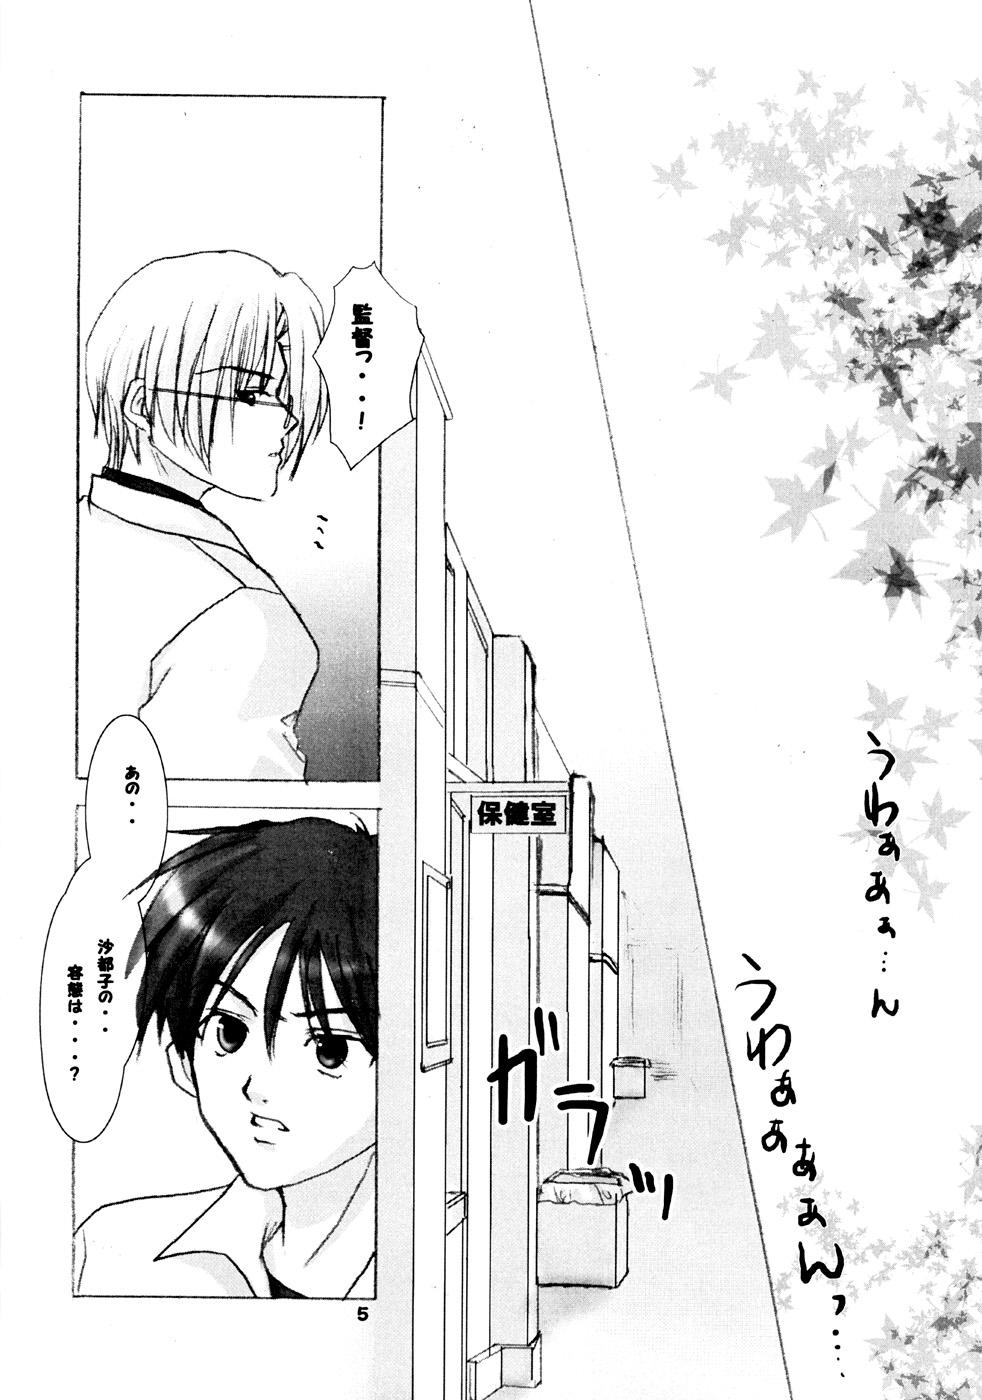 Ex Gf TRIP? TRAP!! - Higurashi no naku koro ni Ecchi - Page 4